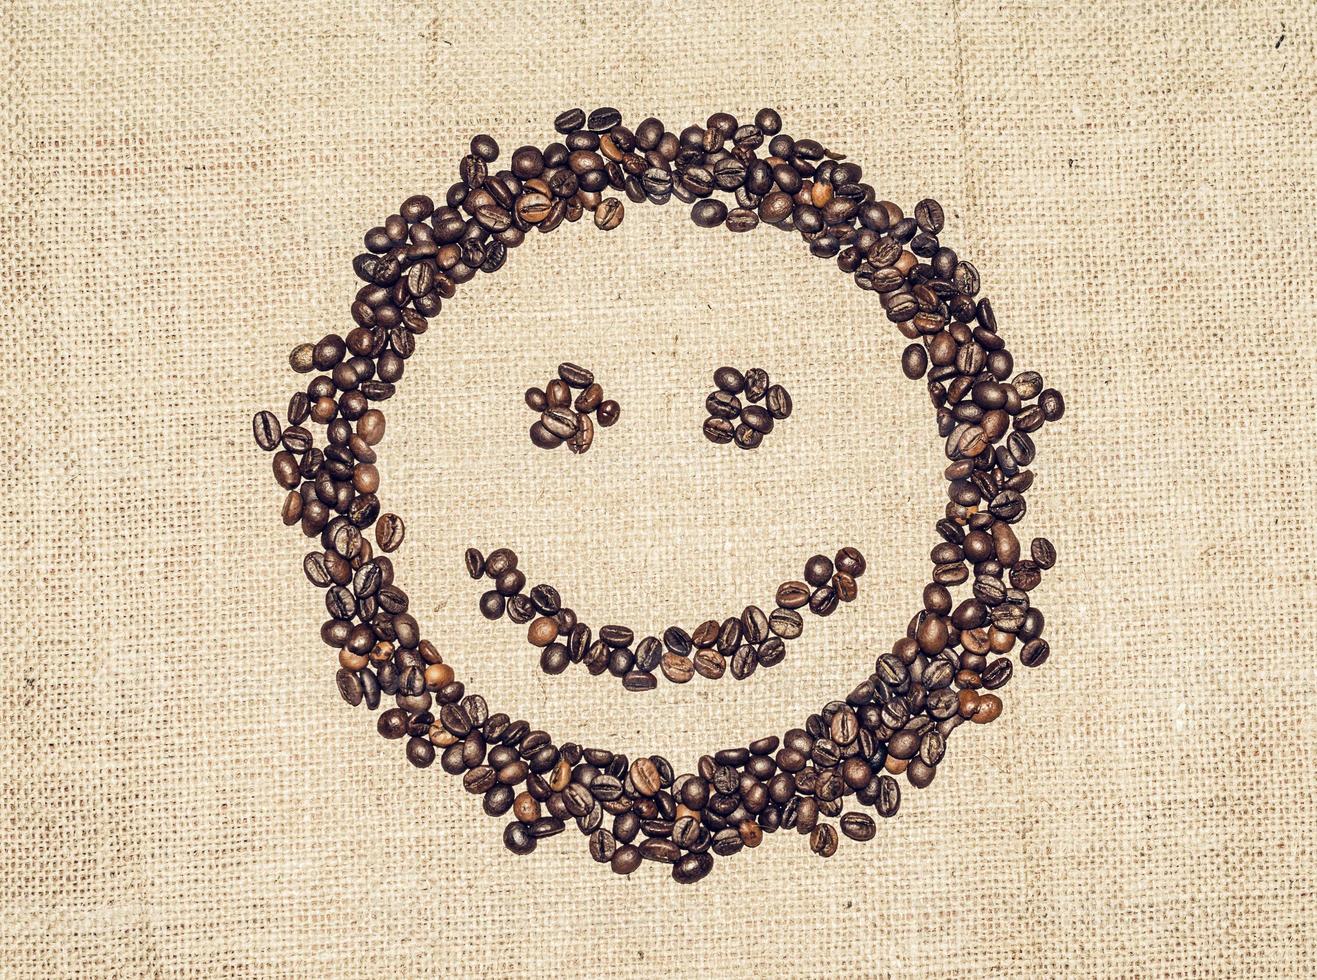 leende ansikte bildas förbi kaffe korn på grov trasa foto